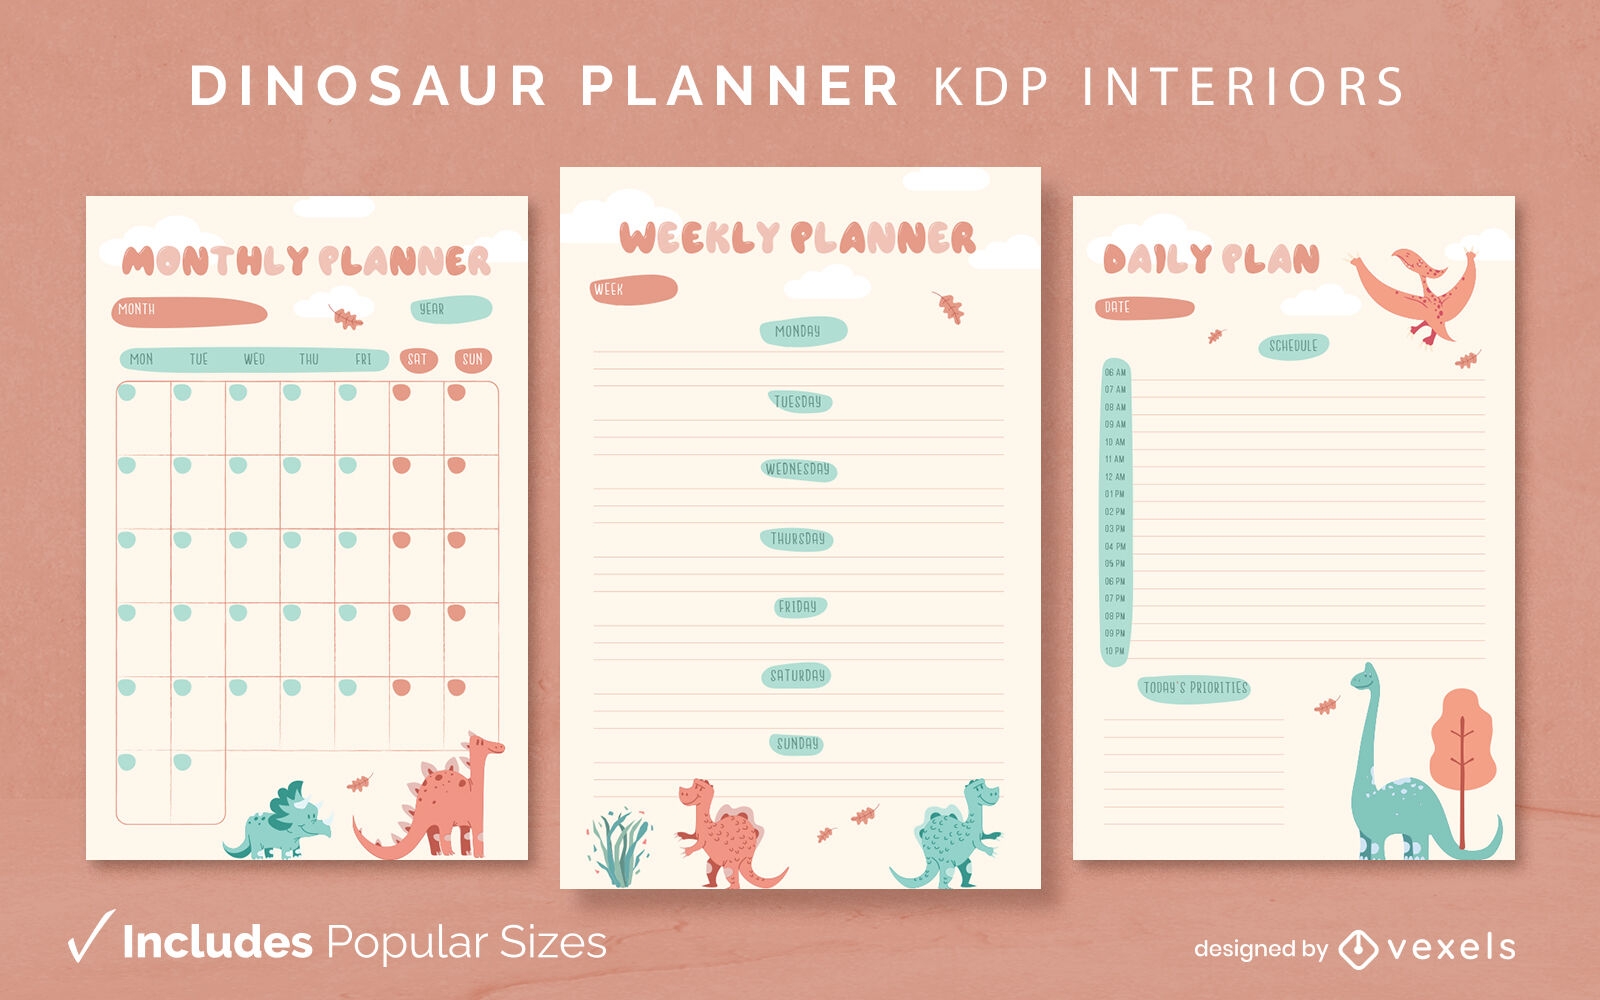 Plantilla de diario de planificador de dinosaurios Diseño de interiores KDP